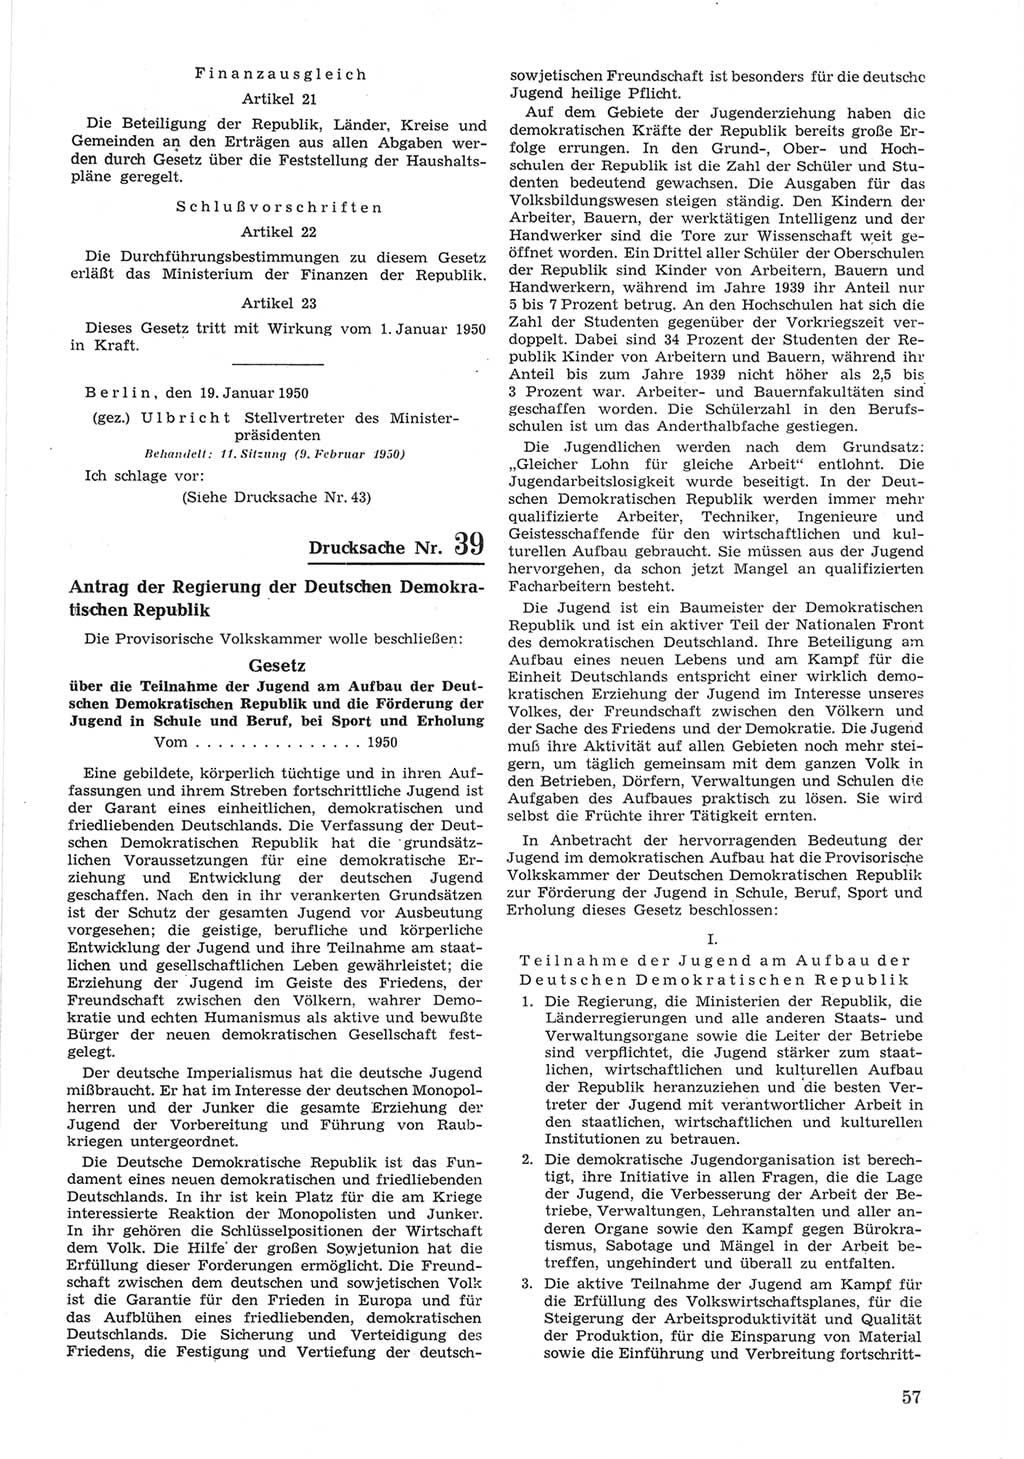 Provisorische Volkskammer (VK) der Deutschen Demokratischen Republik (DDR) 1949-1950, Dokument 657 (Prov. VK DDR 1949-1950, Dok. 657)